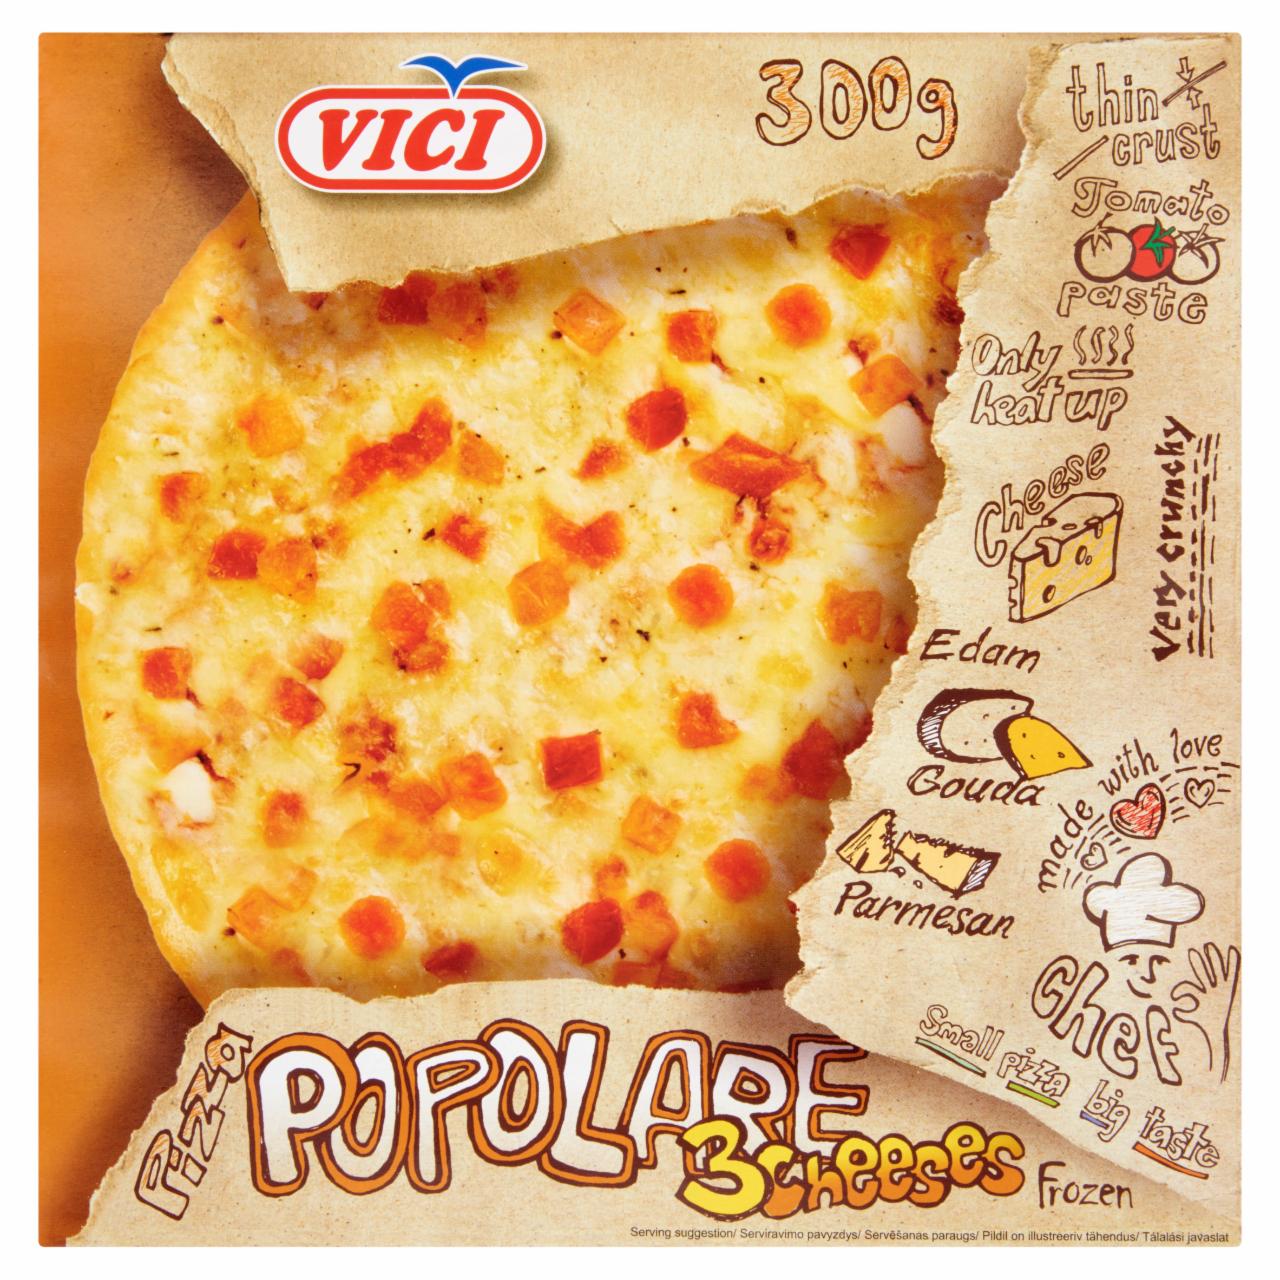 Képek - Vici Pizza Popolare gyorsfagyasztott háromsajtos pizza 300 g